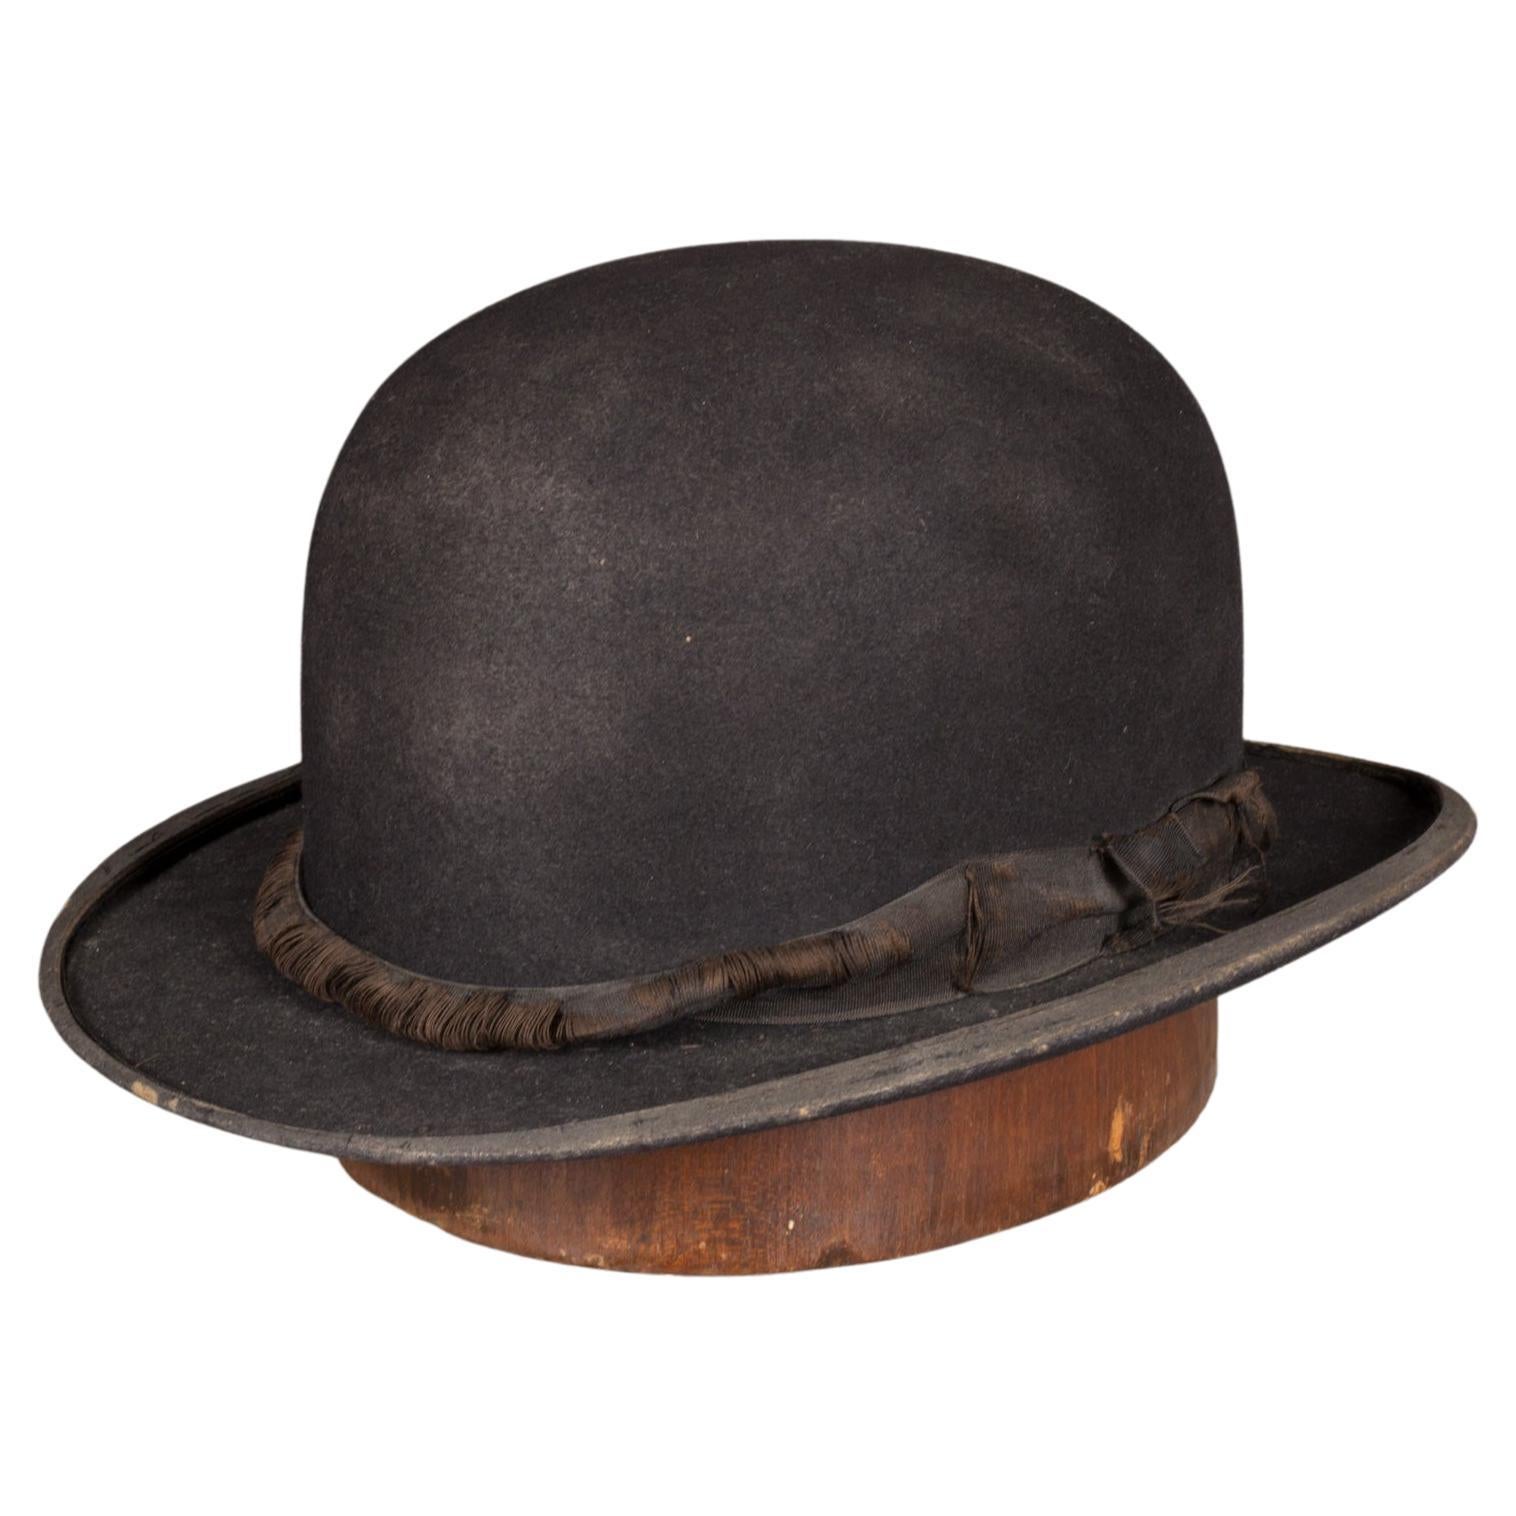 Antique Wool Bowler Hat c.1920-1940  (FREE SHIPPING)